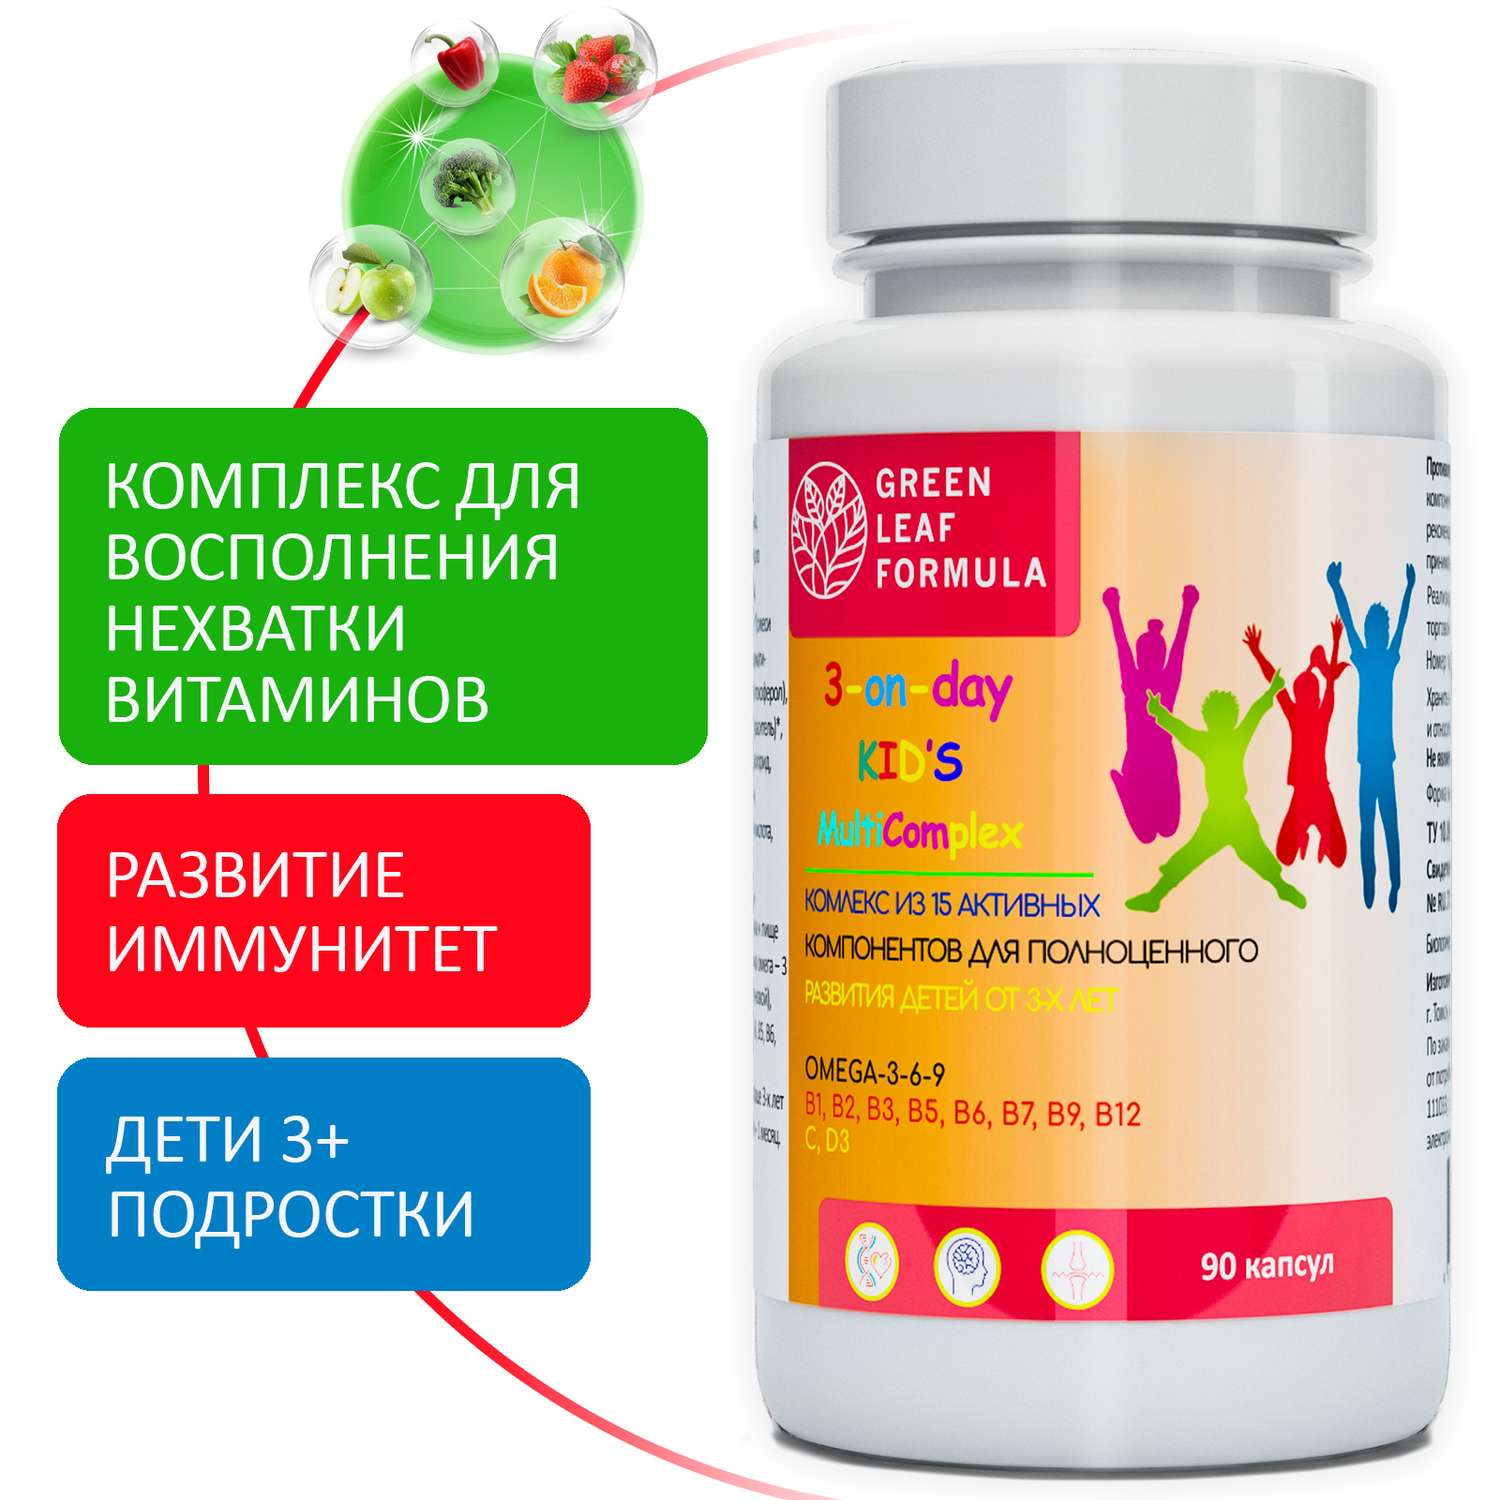 Детский пробиотик и витамины Green Leaf Formula мультивитамины для детей от 3 лет для иммунитета для кишечника - фото 11